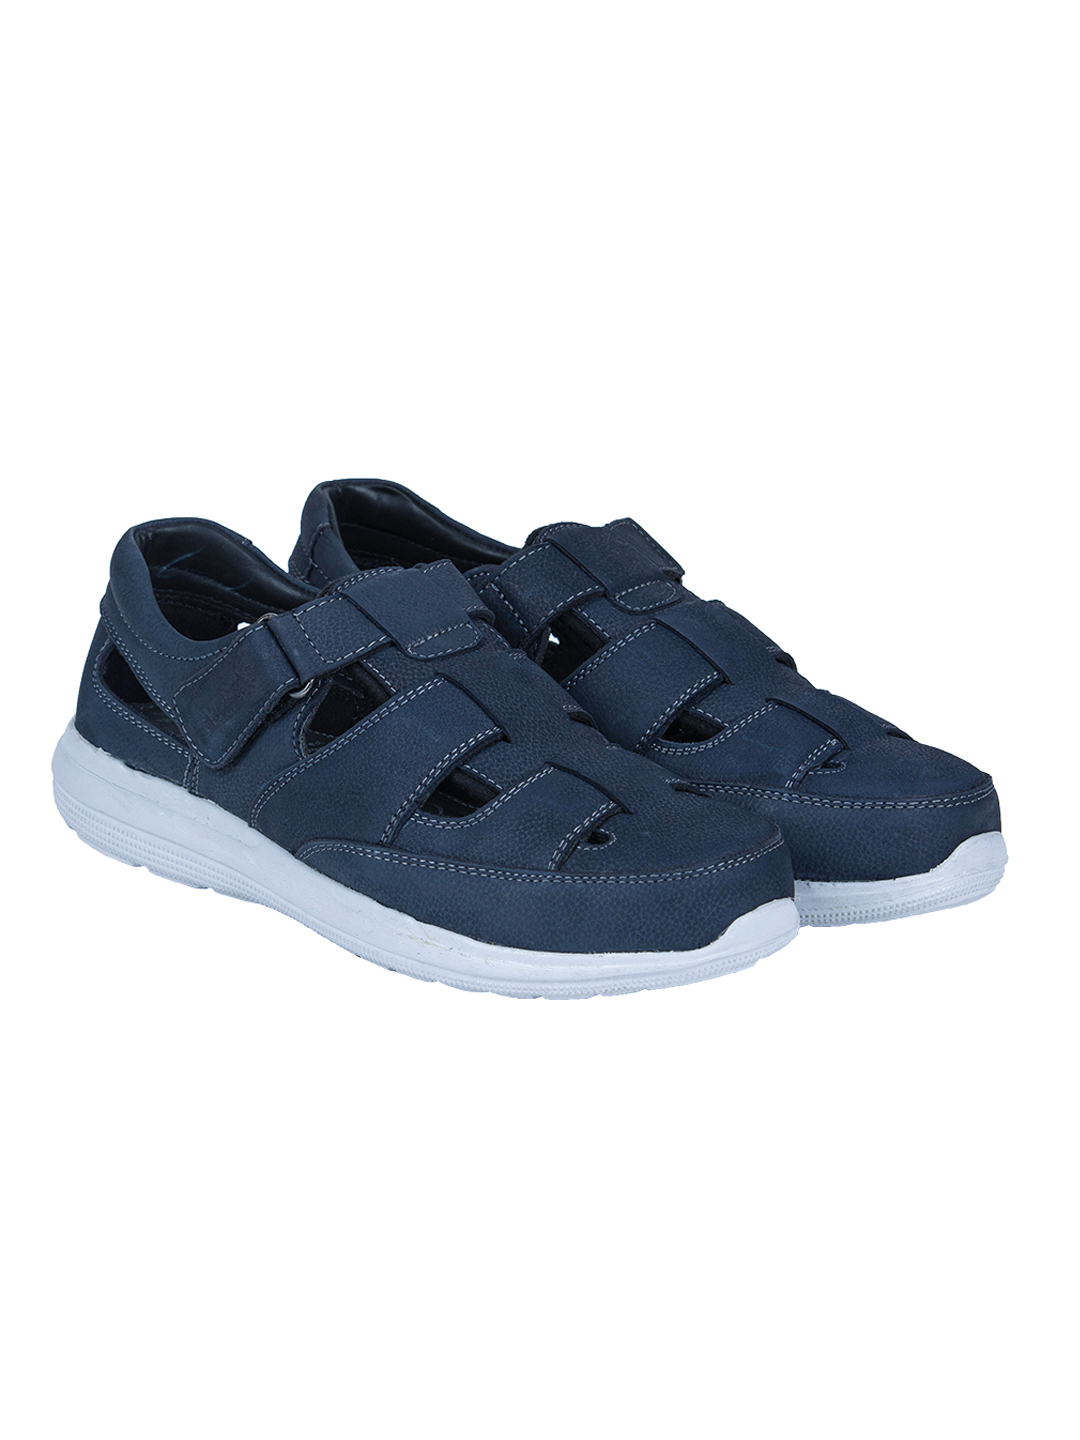 Buy Von Wellx Germany Comfort Blue James Sandals Online in Ghaziabad